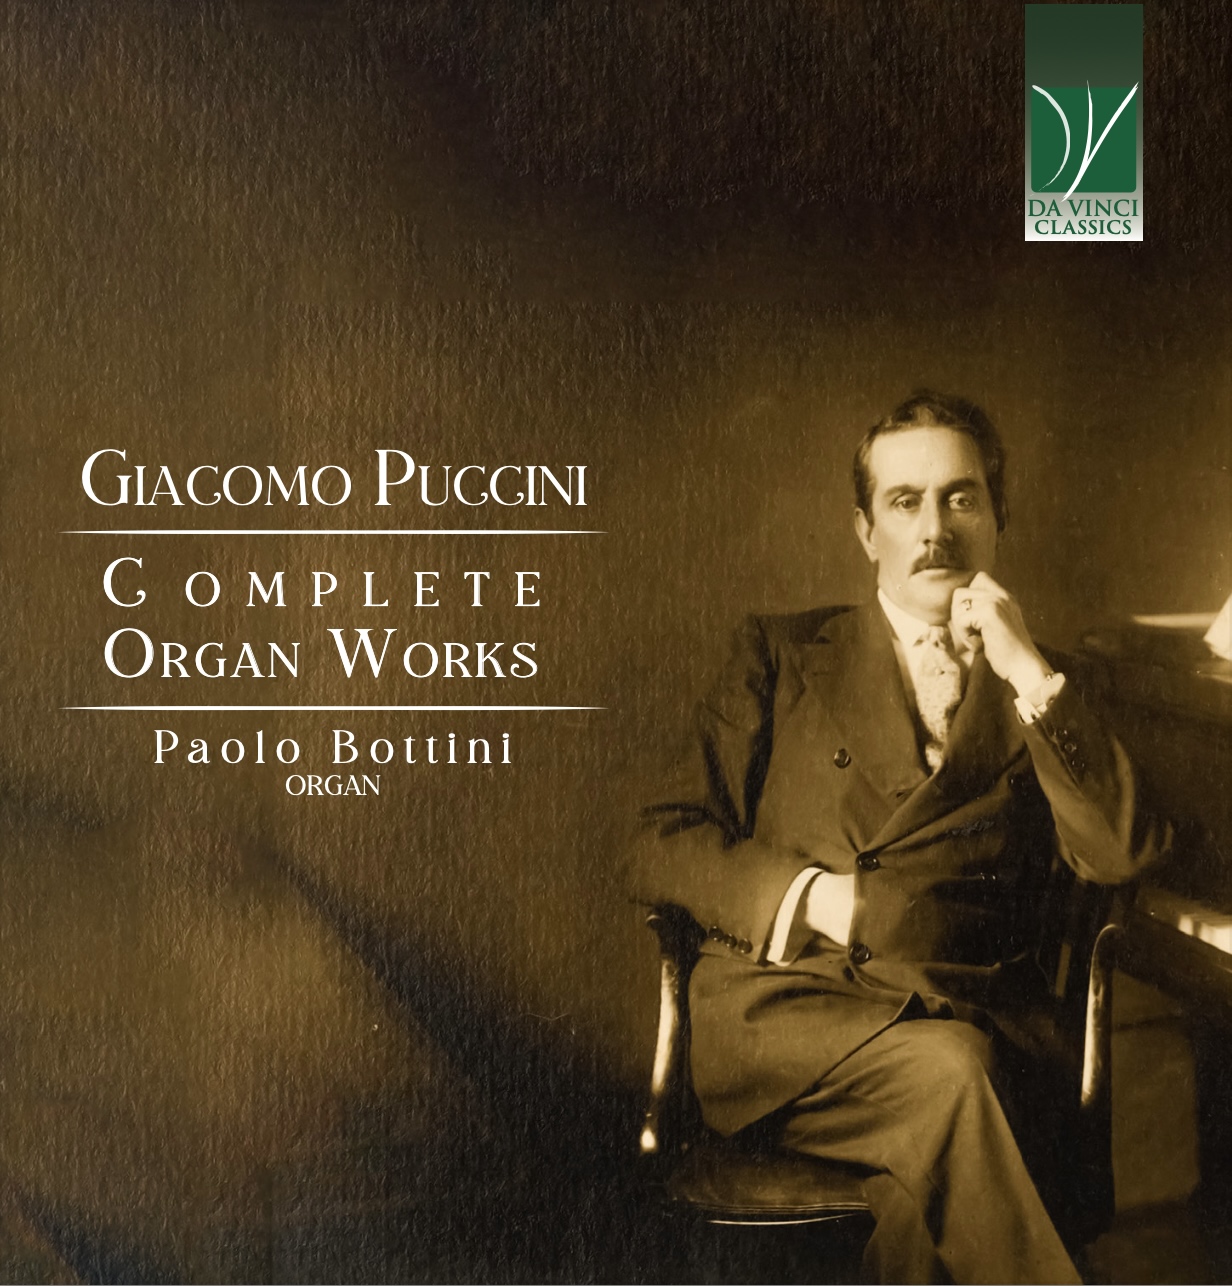 giacomo puccini complete organ works paolo bottini cd davinciclassics